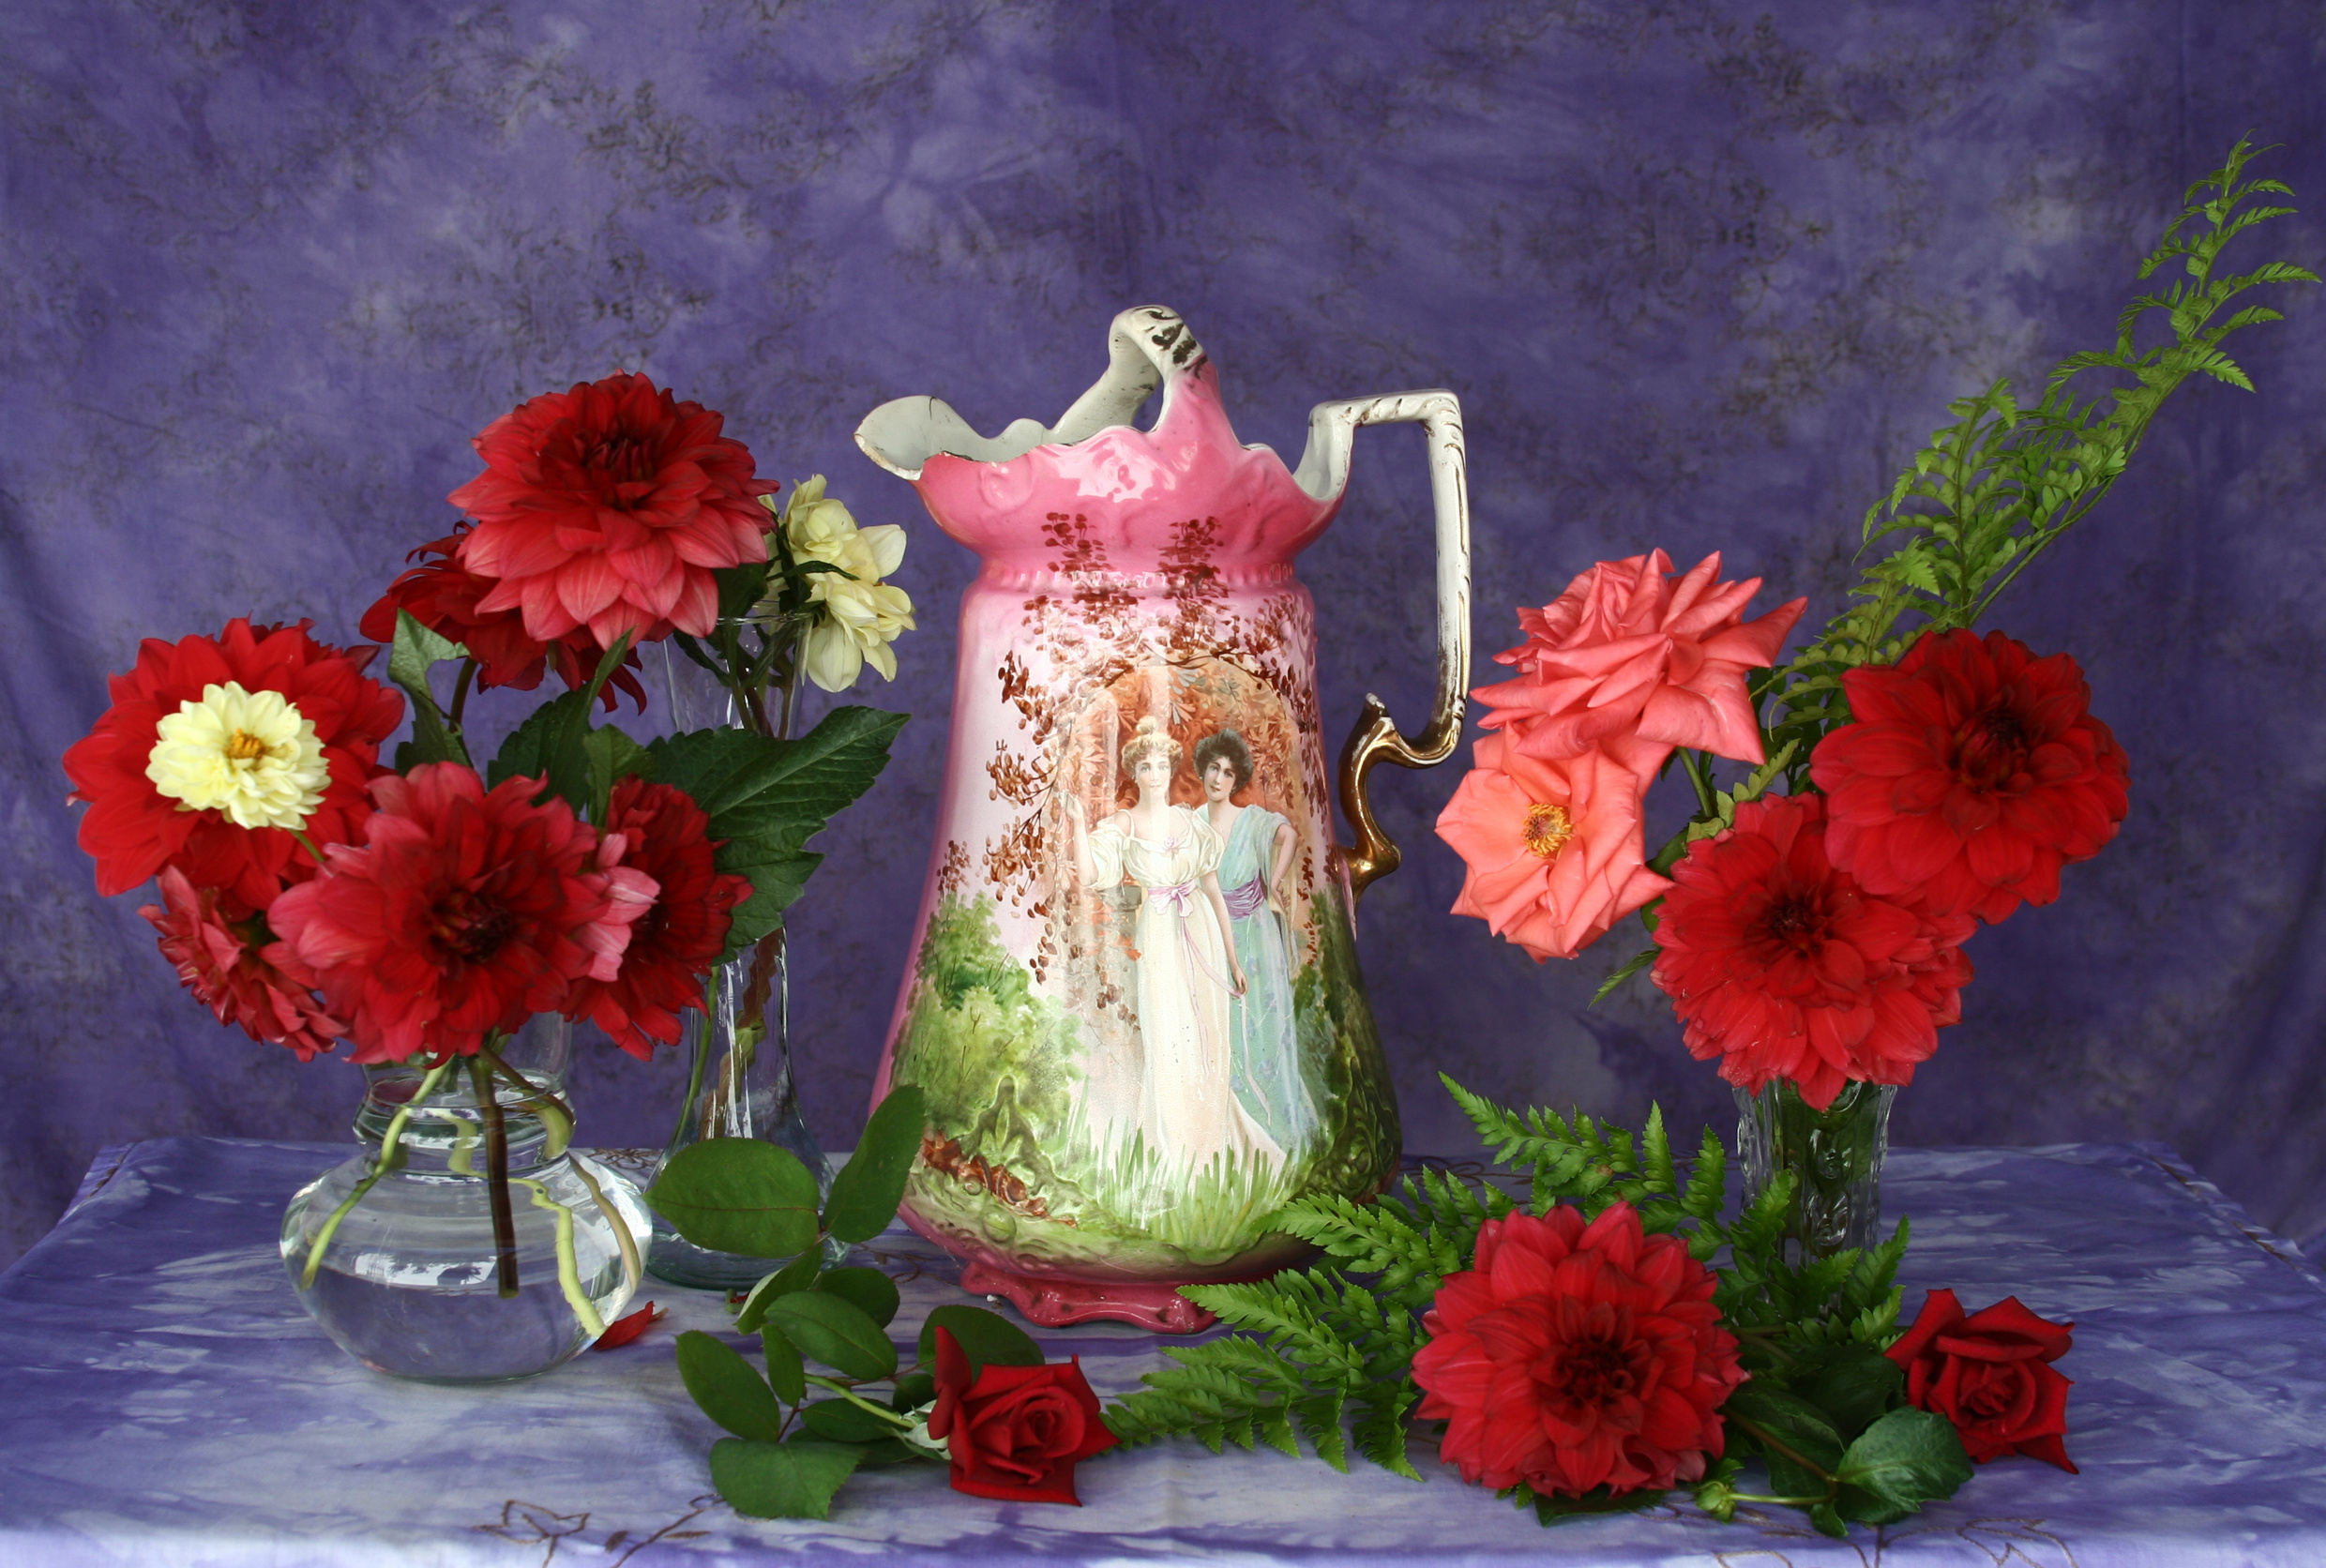 Фотографии роза цветок кувшины Георгины вазе 2480x1672 Розы Цветы Кувшин Ваза вазы